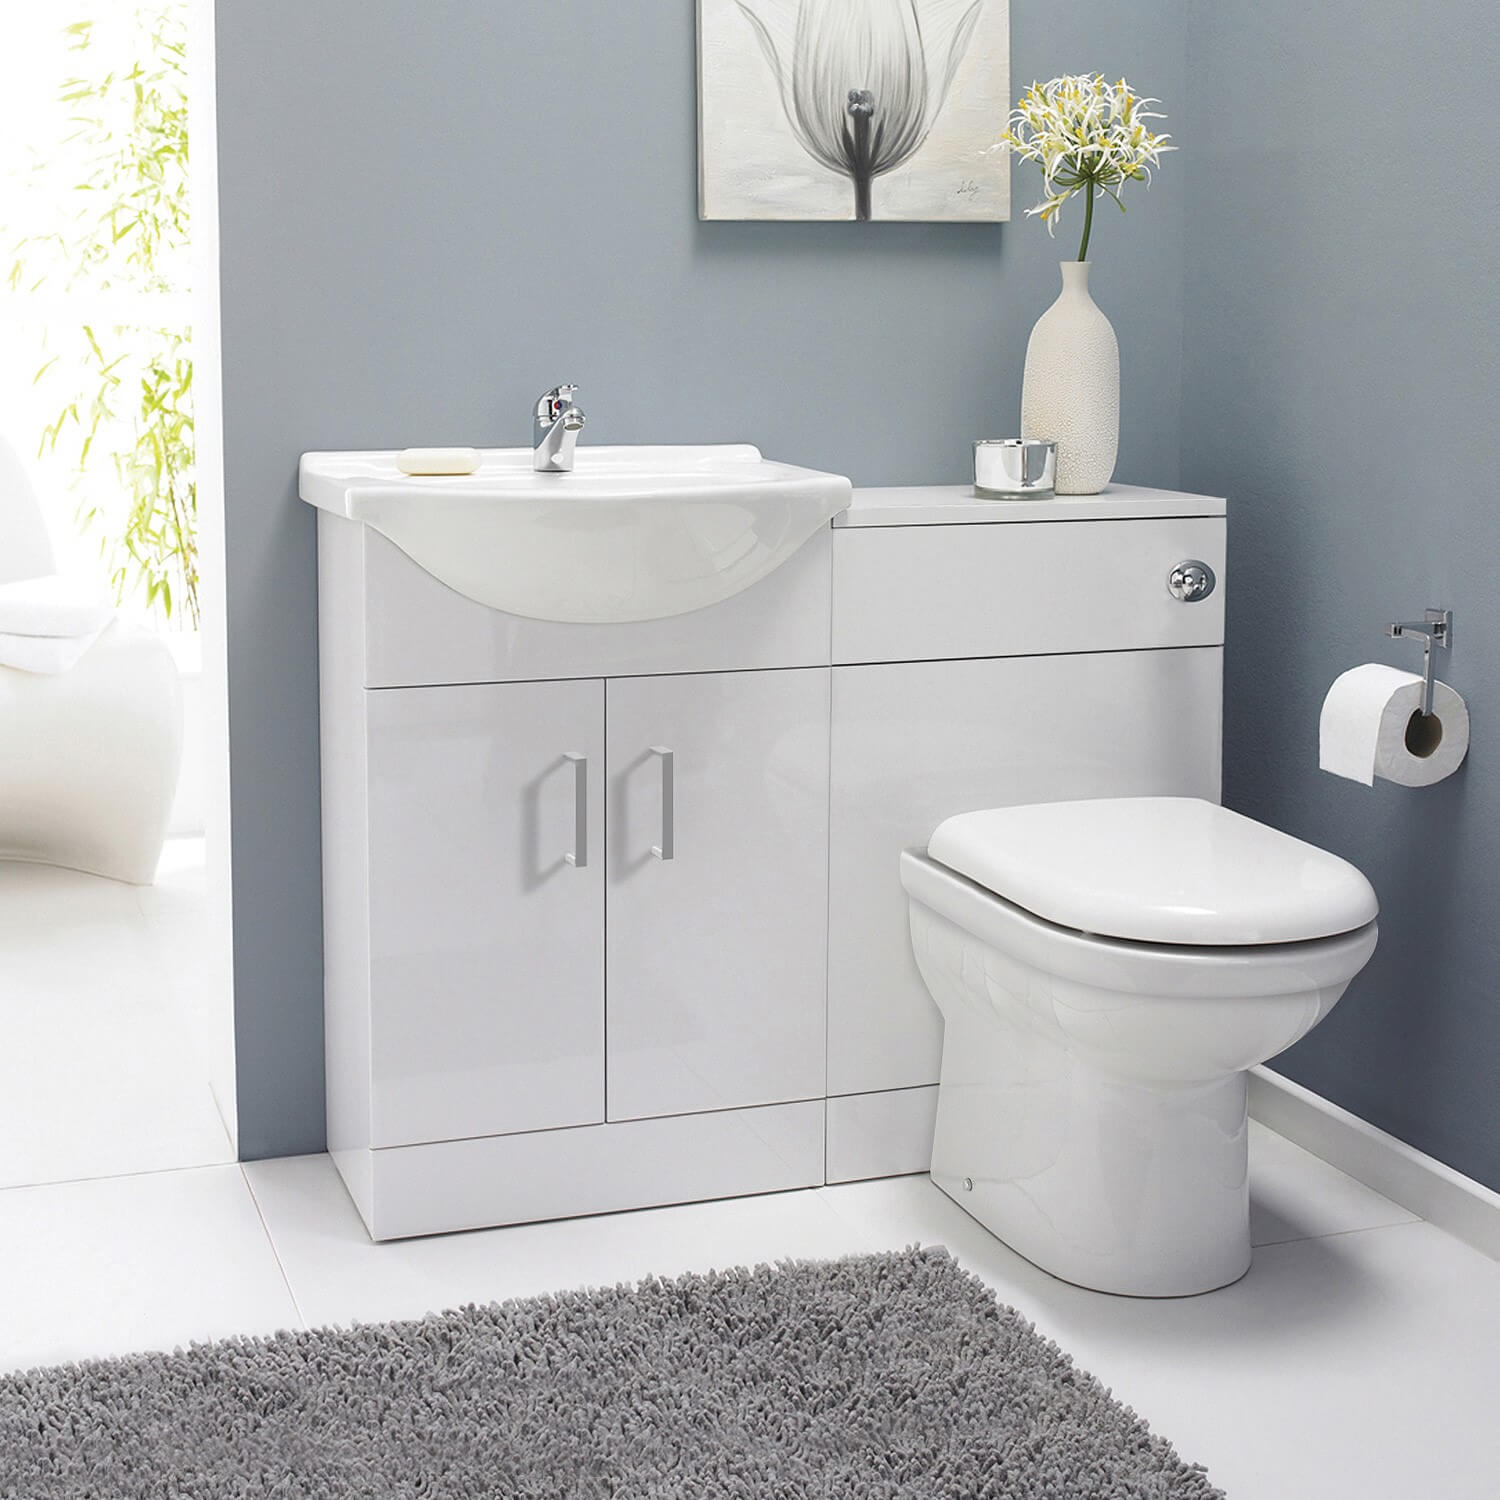 Complete Bathroom Cloakroom Furniture Suite Vanity Unit Basin Sink WC Toilet Pan